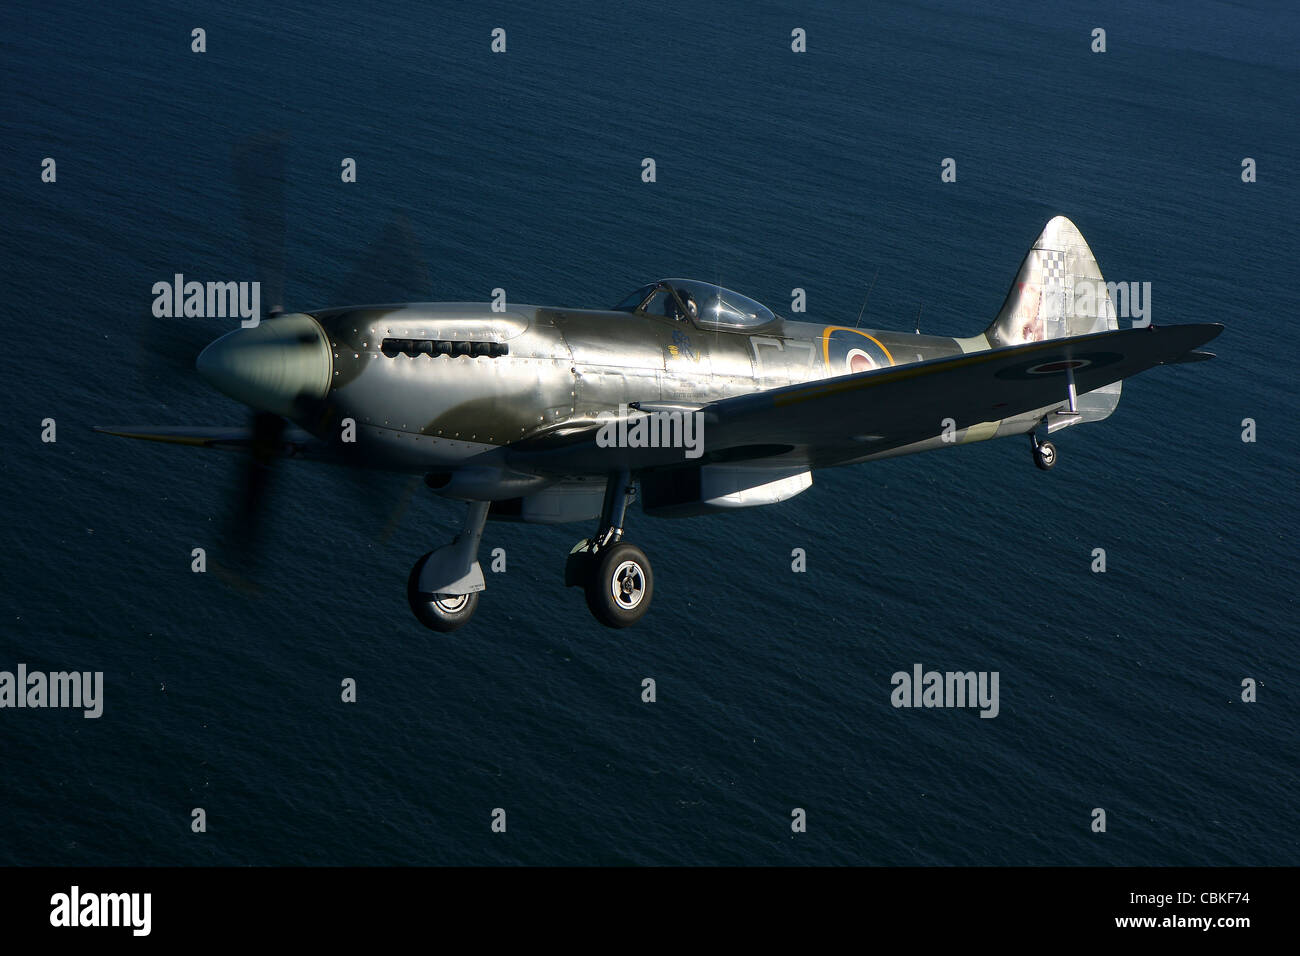 Angelholm, Sweden - Supermarine Spitfire Mk. XVIII fighter warbird. Stock Photo